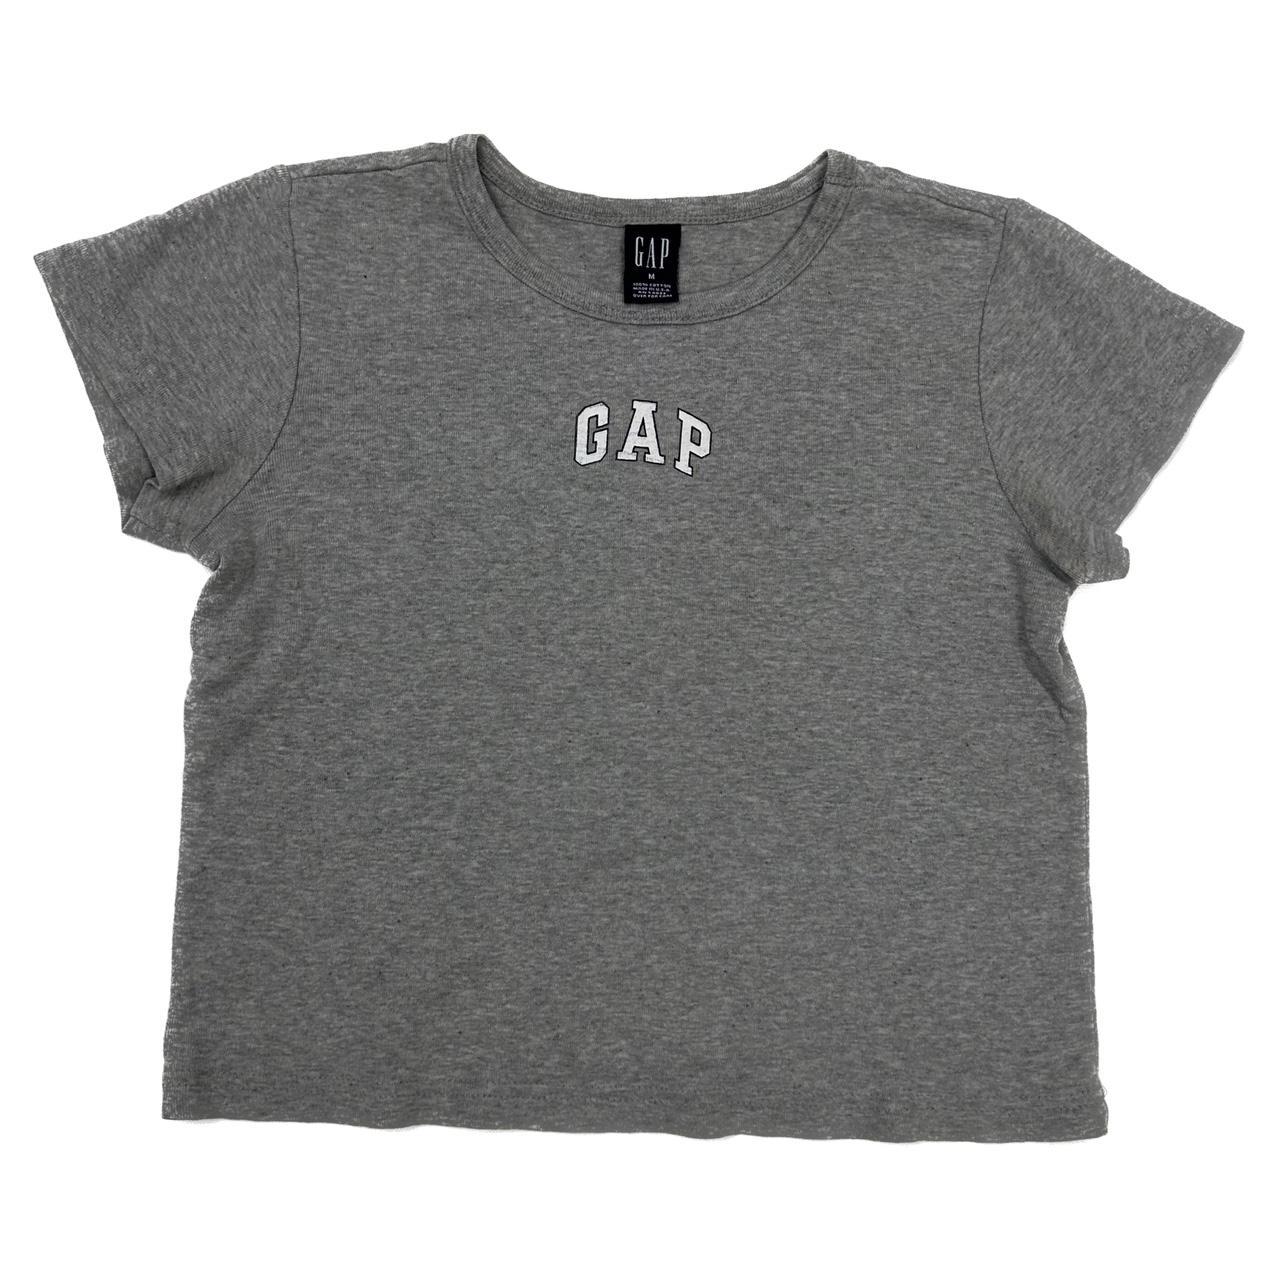 Gap Women's Grey T-shirt | Depop